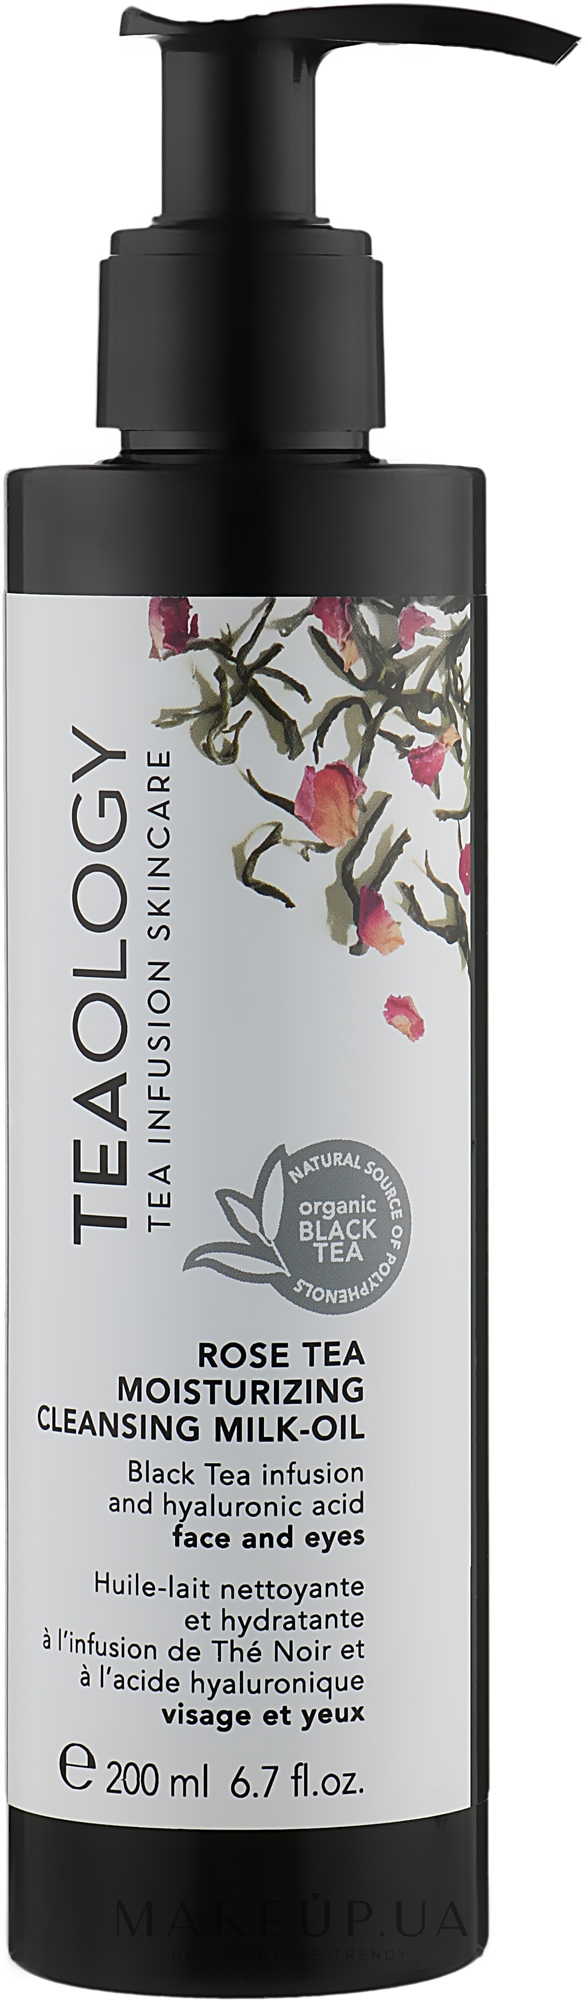 Очищувальне молочко на основі екстракту чаю троянди - Teaology Rose Tea Moisturizing Cleansing Milk-Oil — фото 200ml